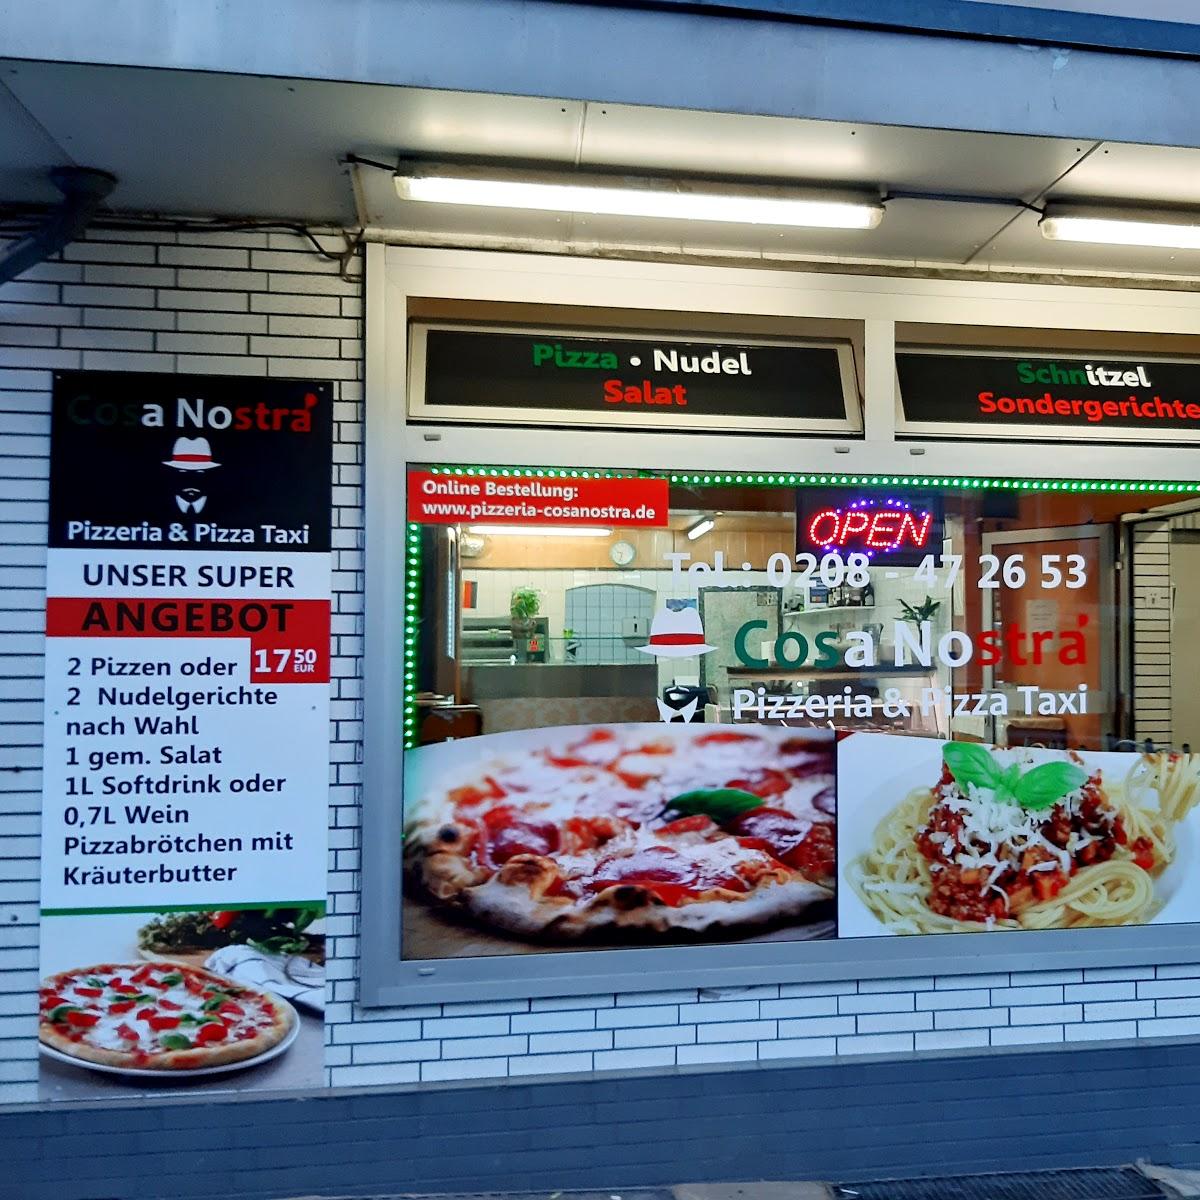 Restaurant "Pizzeria Cosa Nostra" in Mülheim an der Ruhr